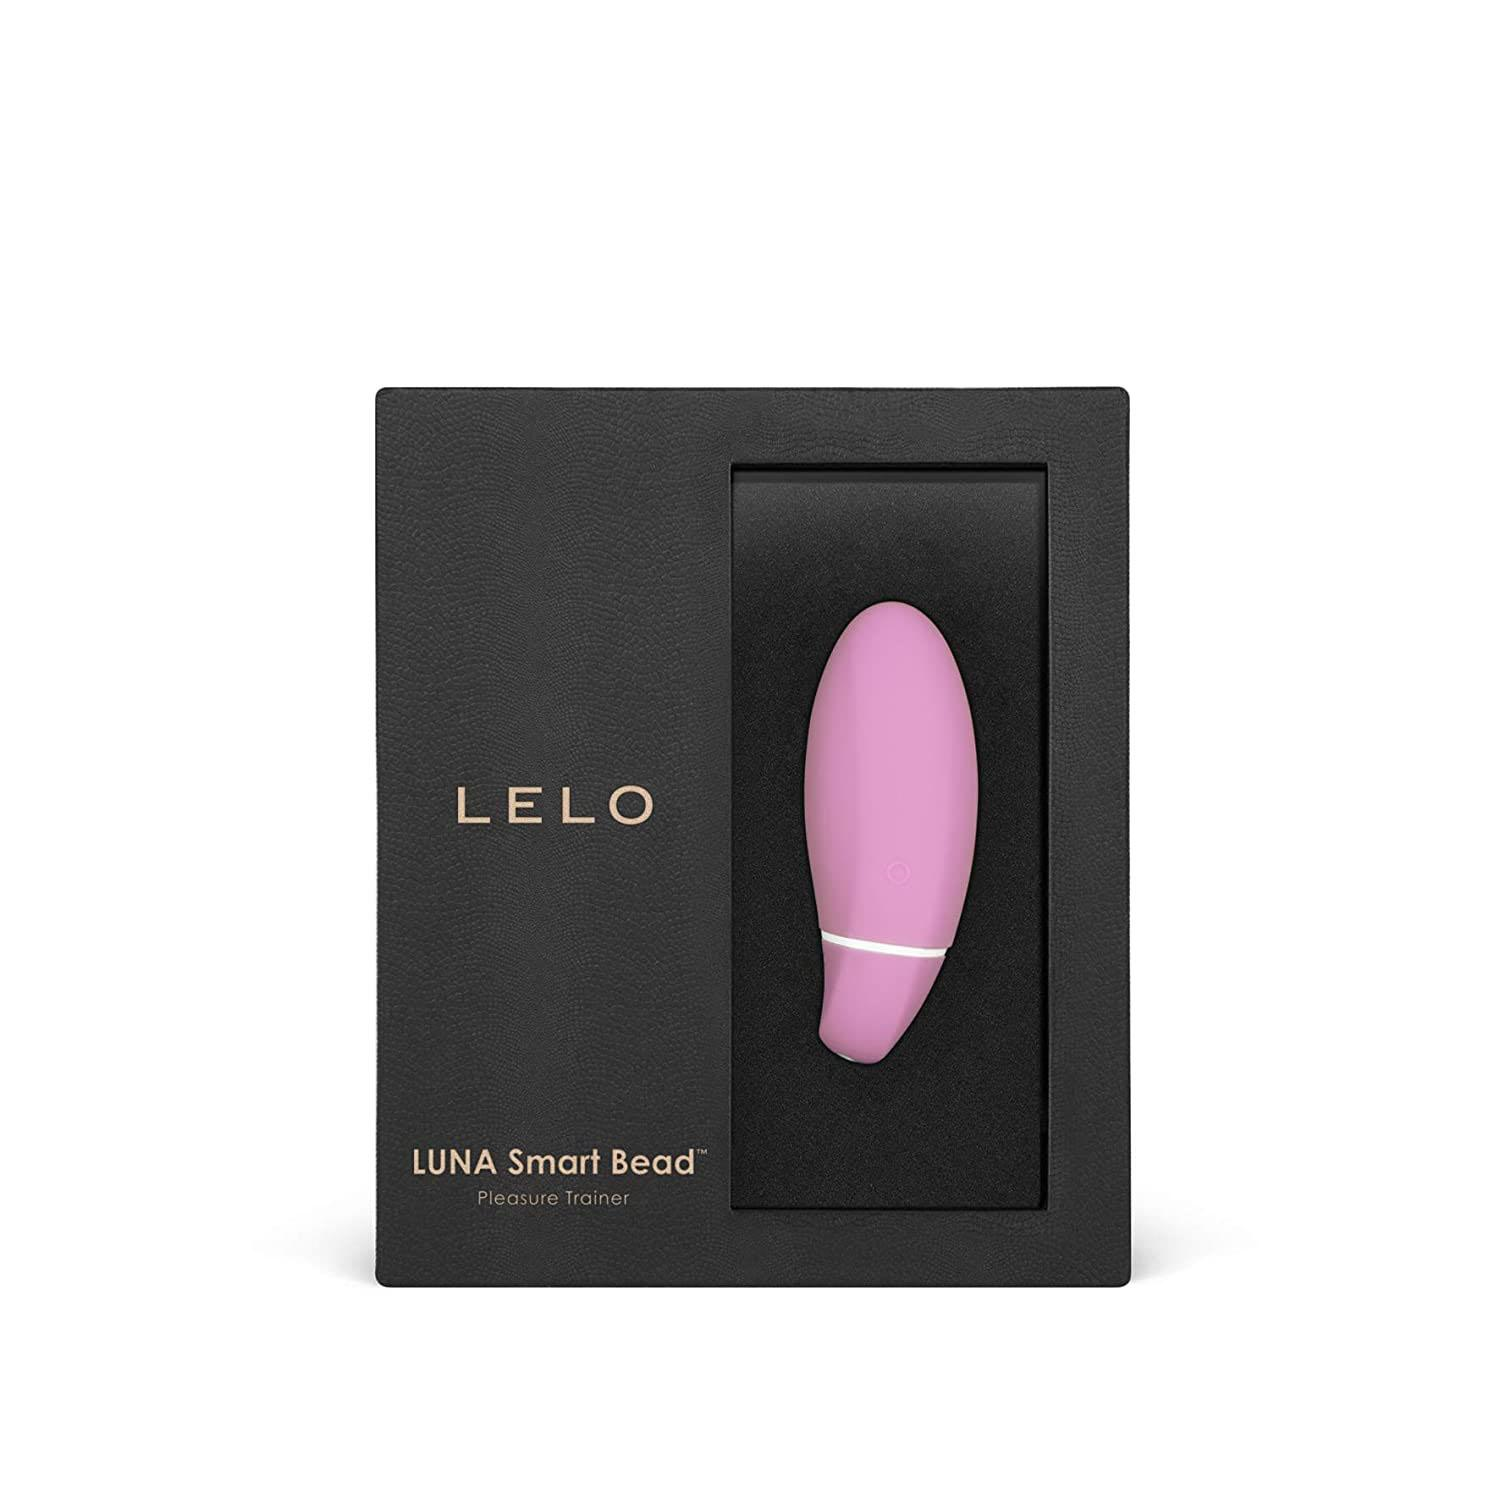 Lelo-Luna-Smart-Bead-Pink-by-Lelo2.bmp